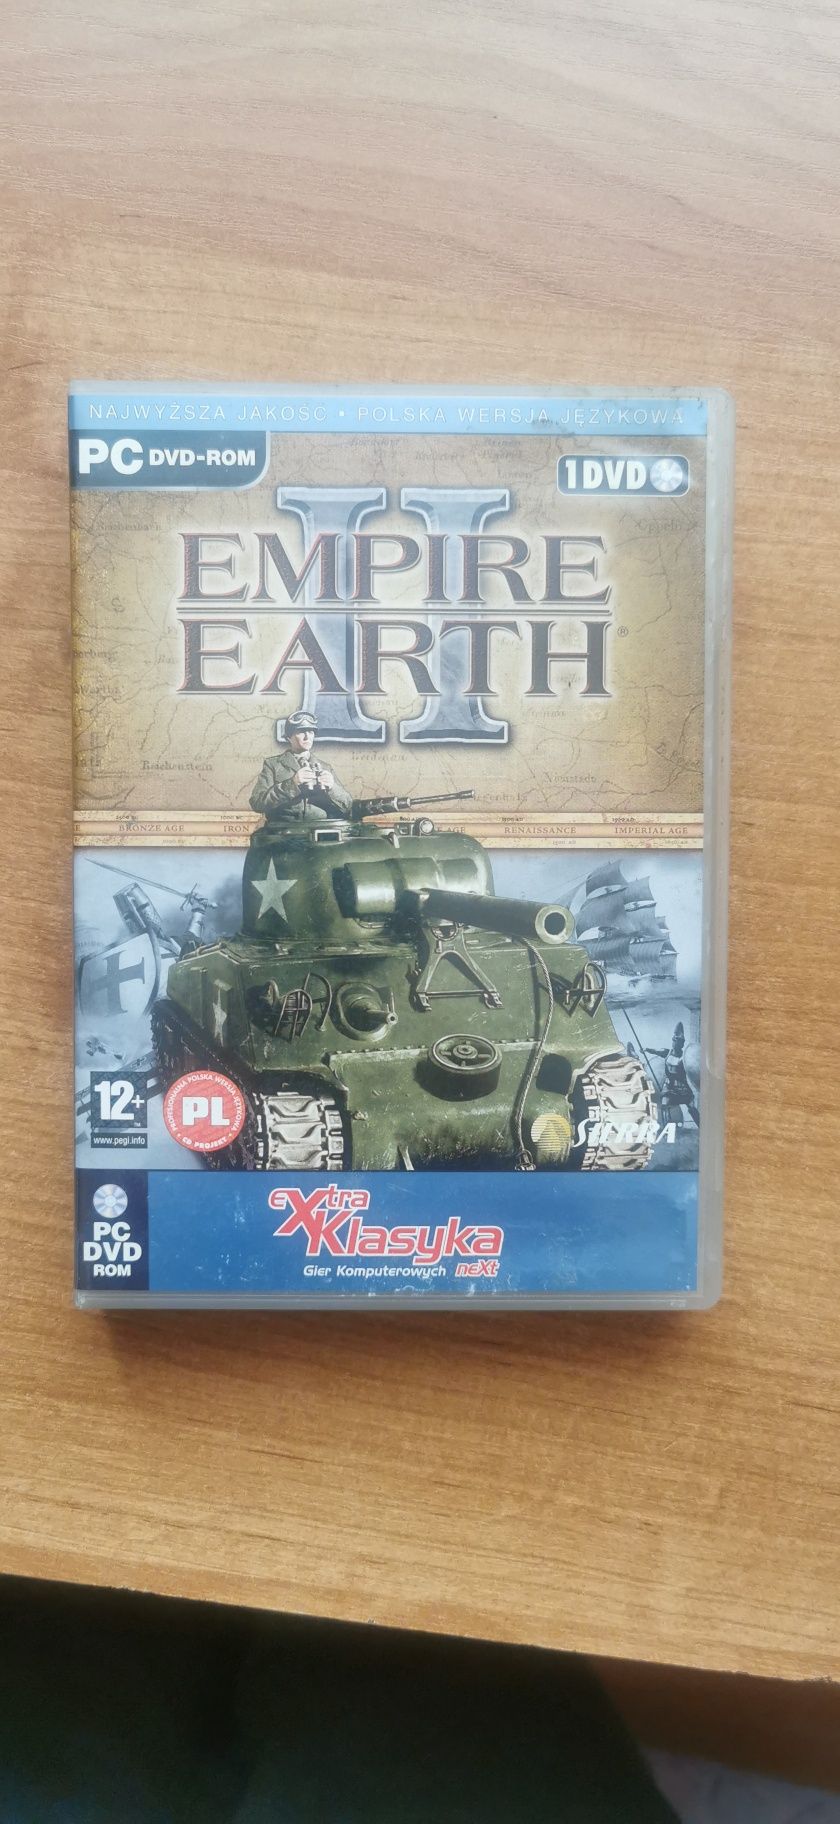 Empire Earth II pc dvd